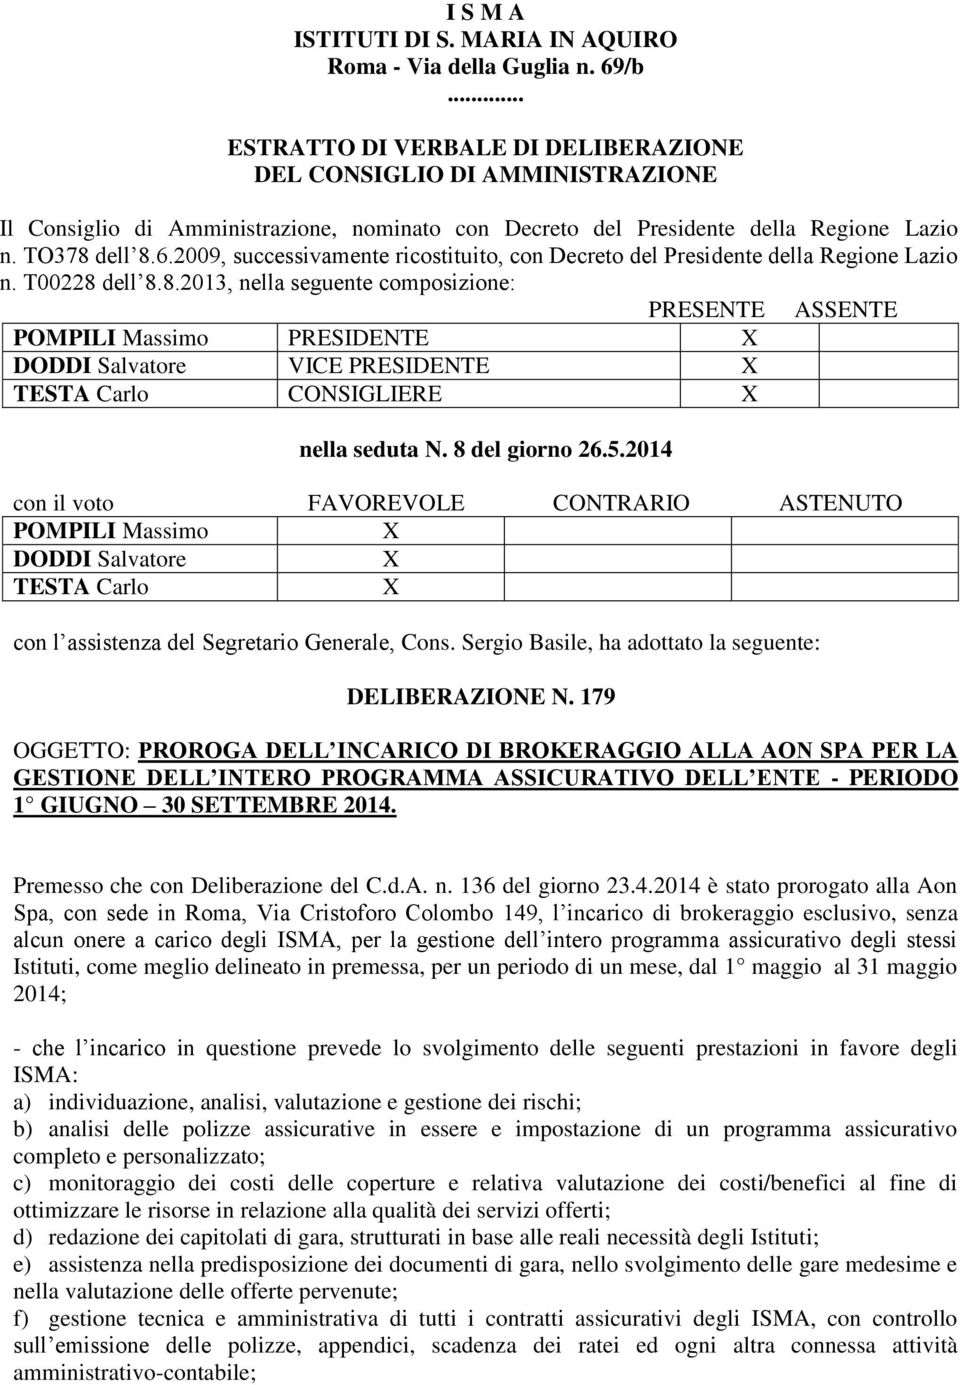 2009, successivamente ricostituito, con Decreto del Presidente della Regione Lazio n. T00228 